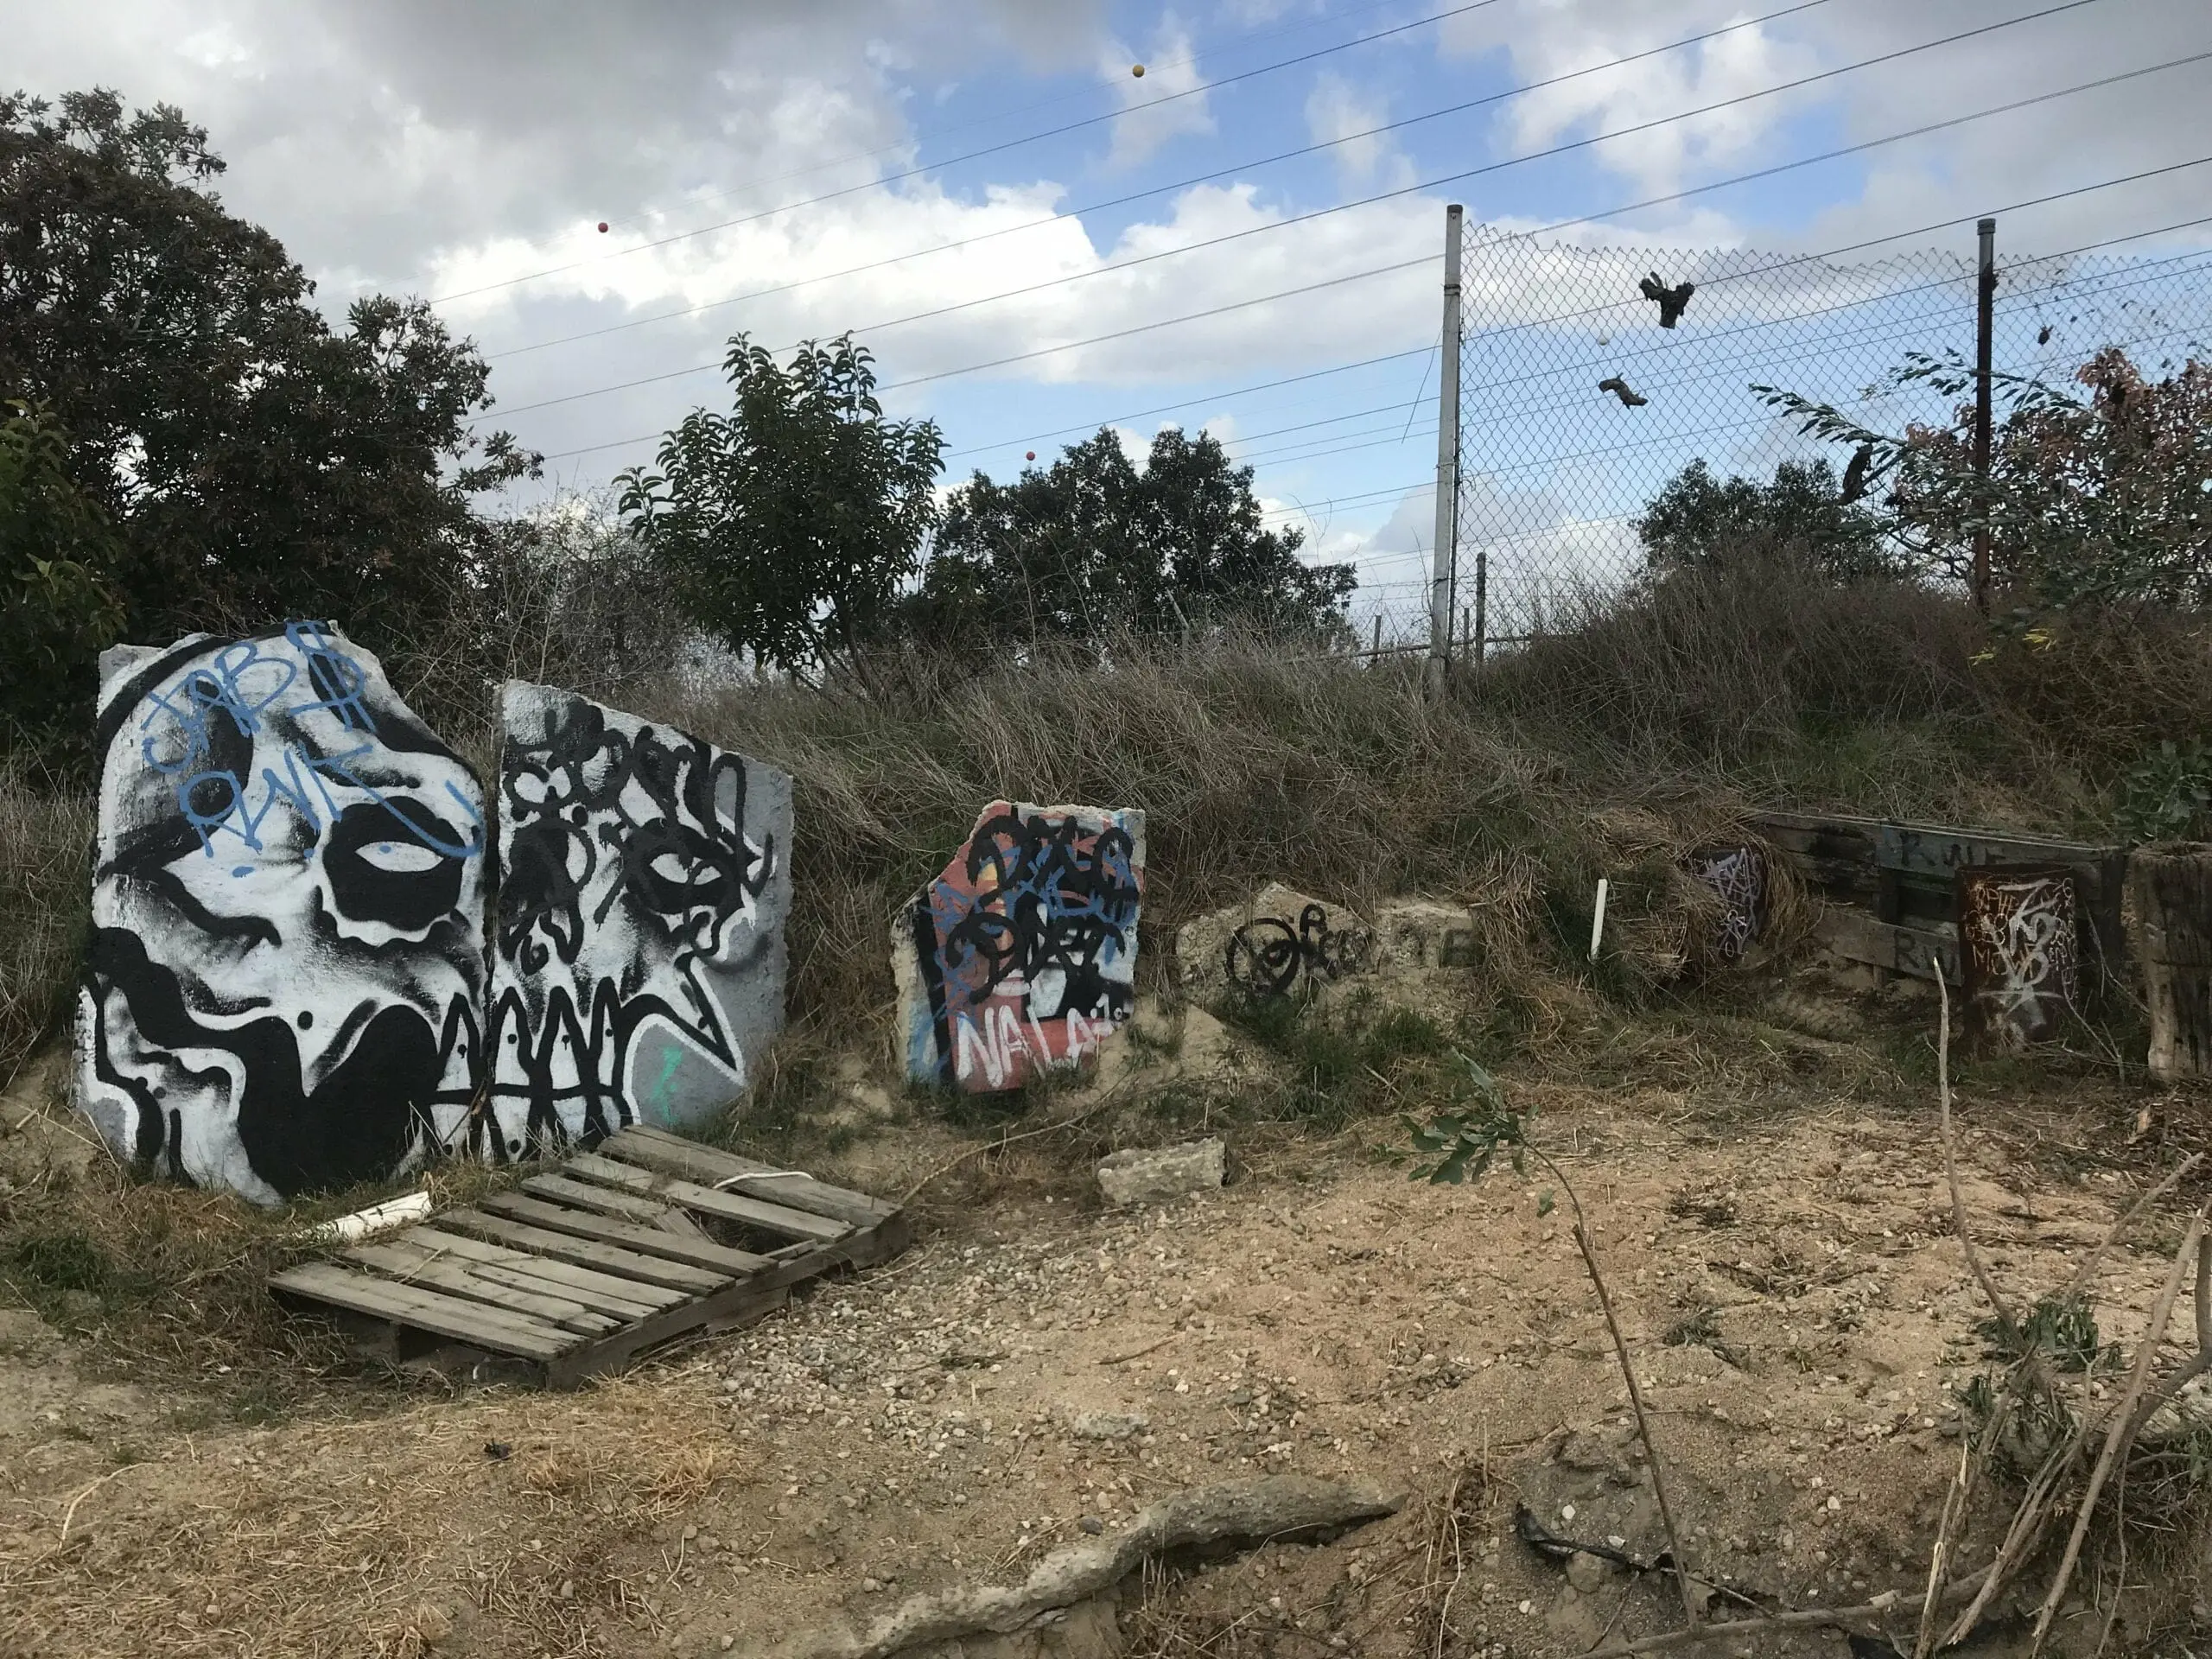 Turnbull Canyon graffiti